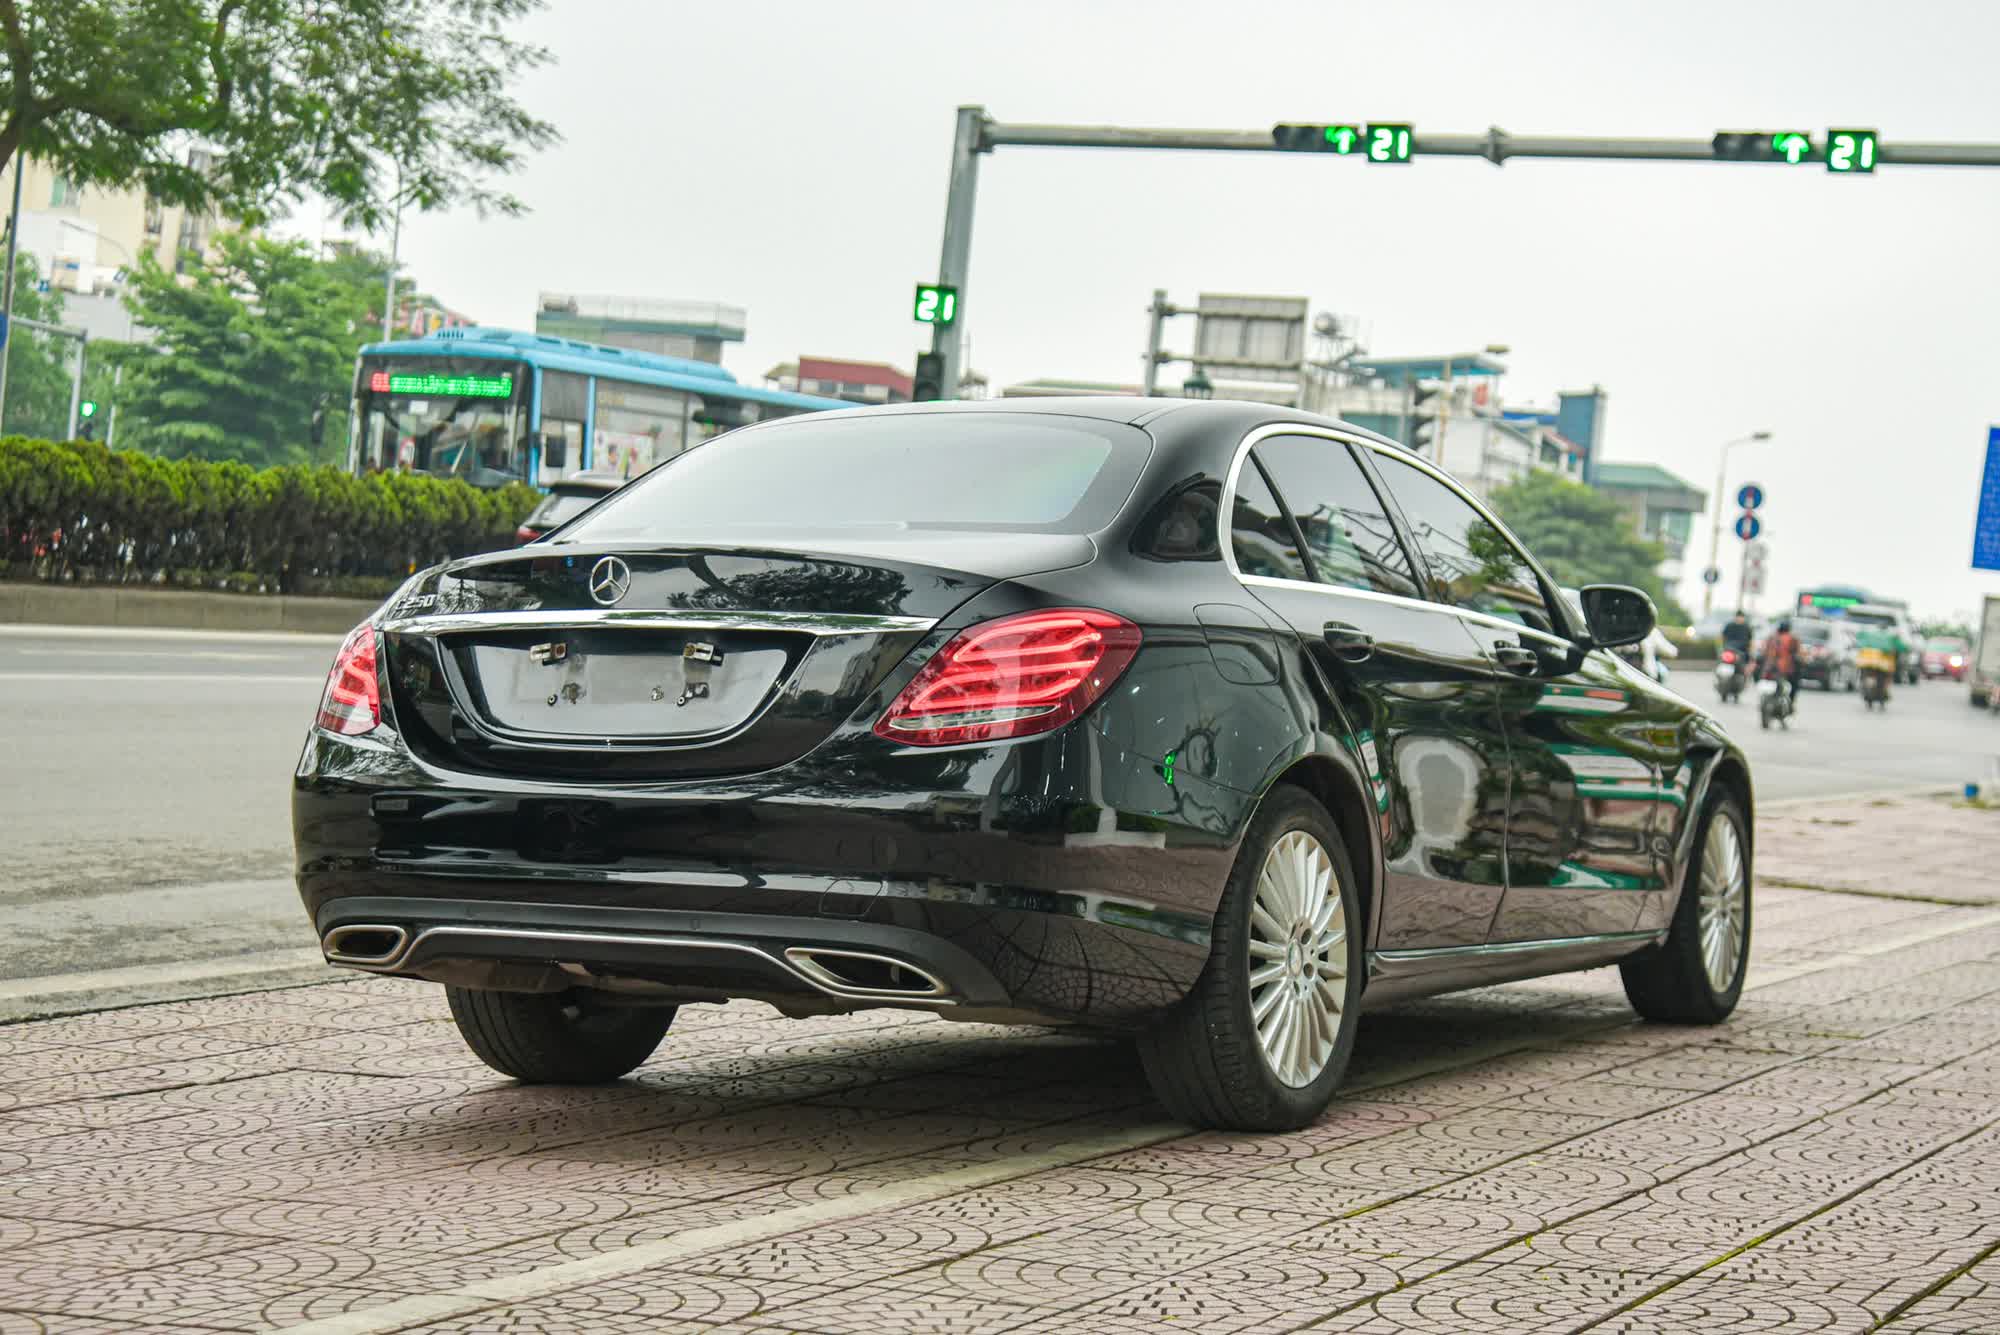 Cơ hội trải nghiệm Mercedes-Benz C 250 với giá gần ngang ngửa Kia K5 - Ảnh 4.